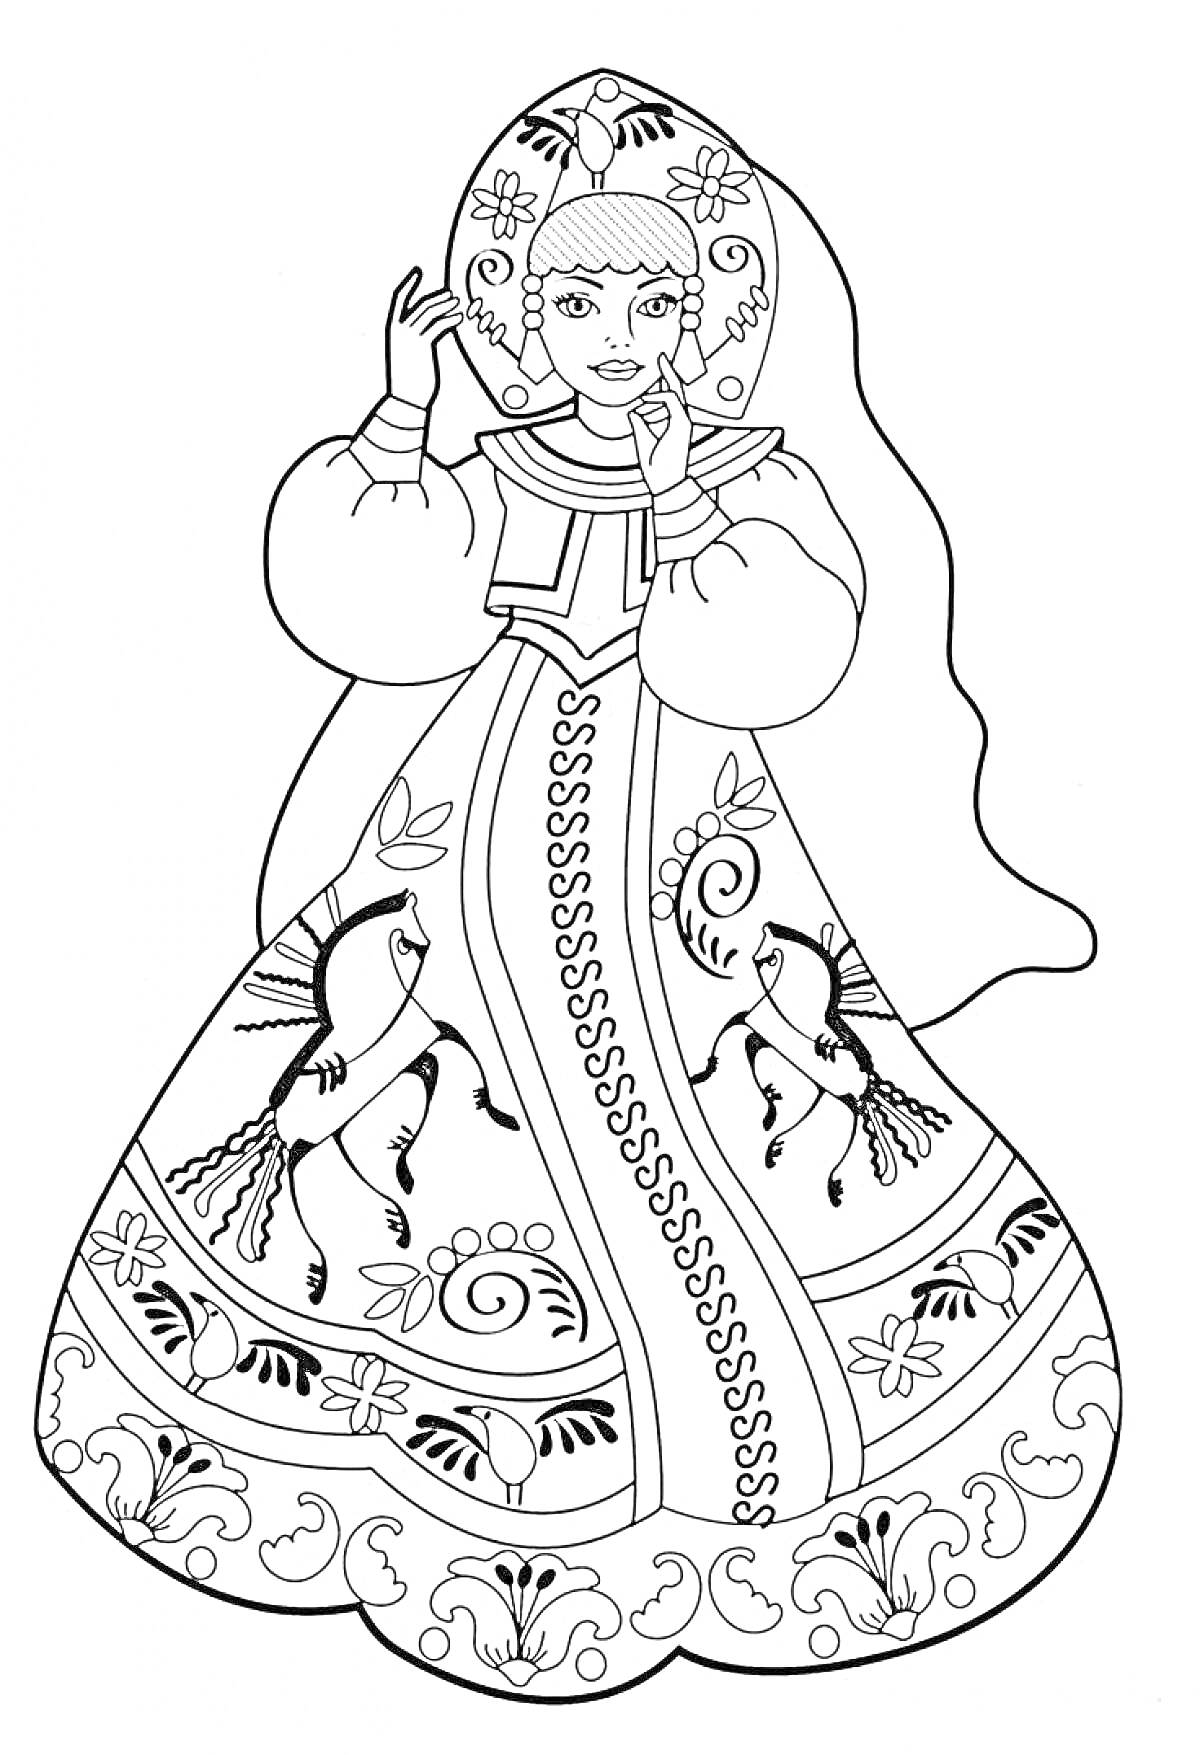 Раскраска Барышня в традиционном платье, с головным убором и узорами с птицами и цветами